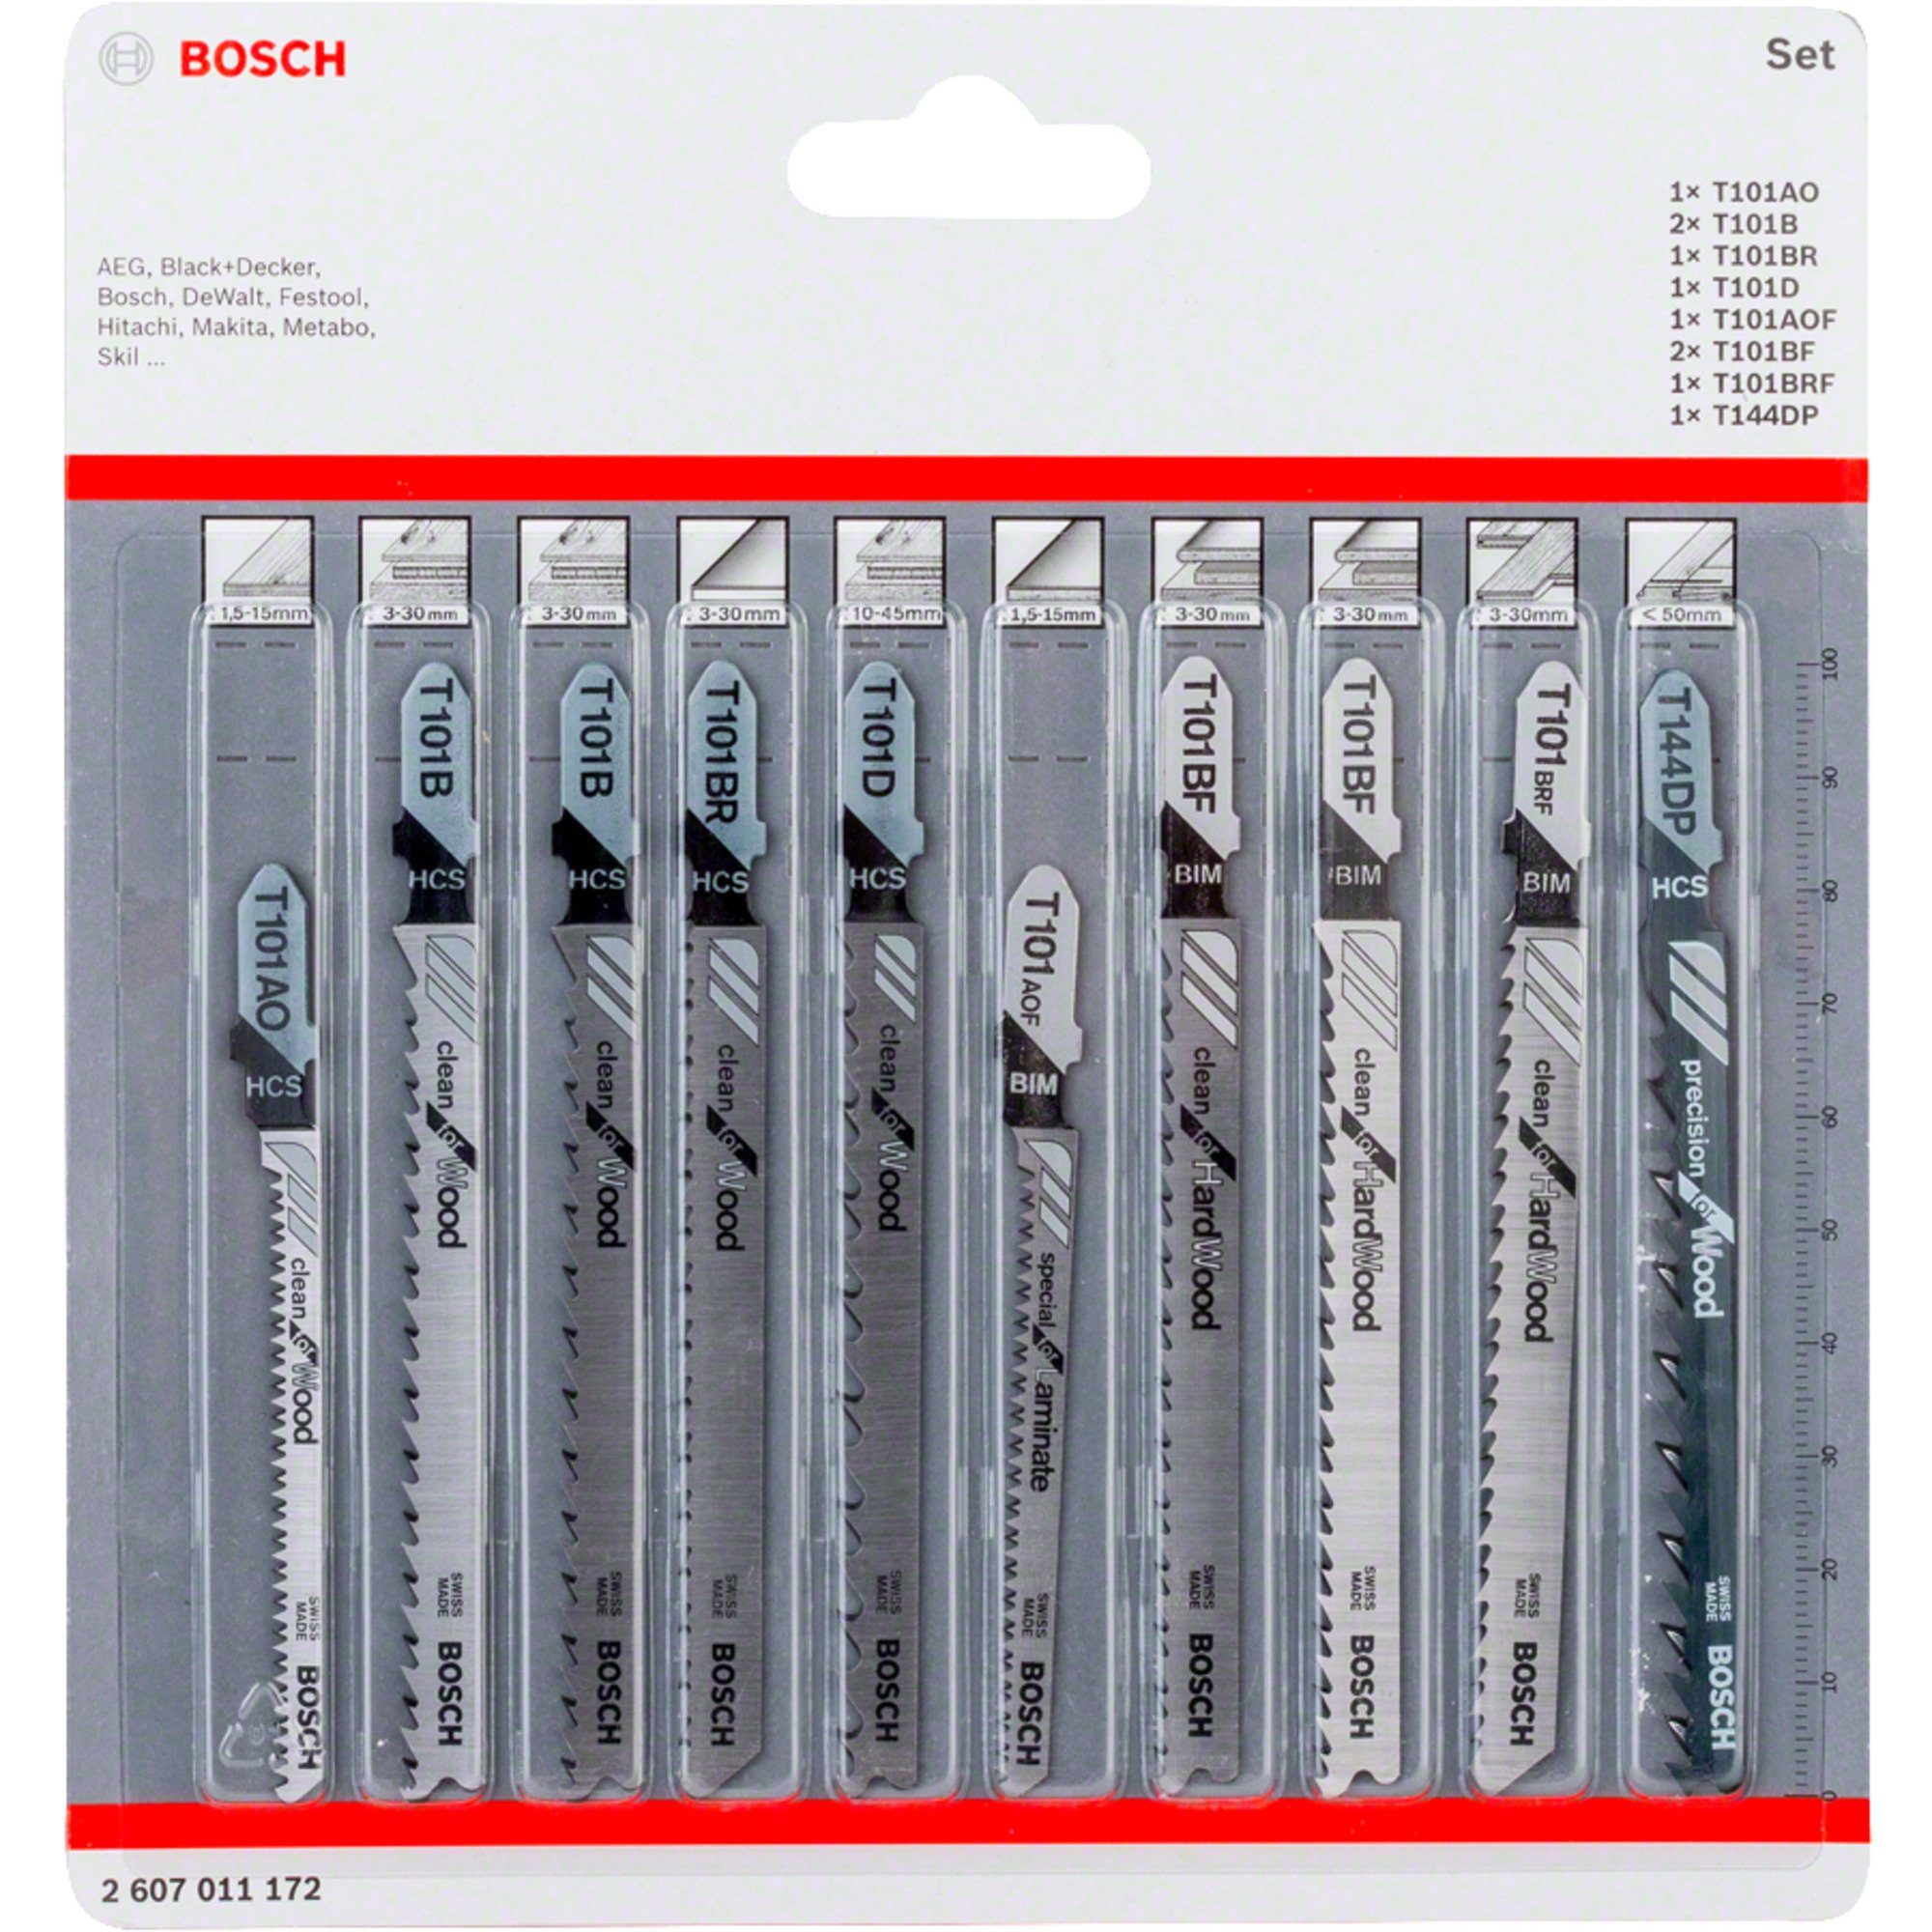 BOSCH Sägeblatt Bosch Professional Stichsägeblatt-Satz Clean